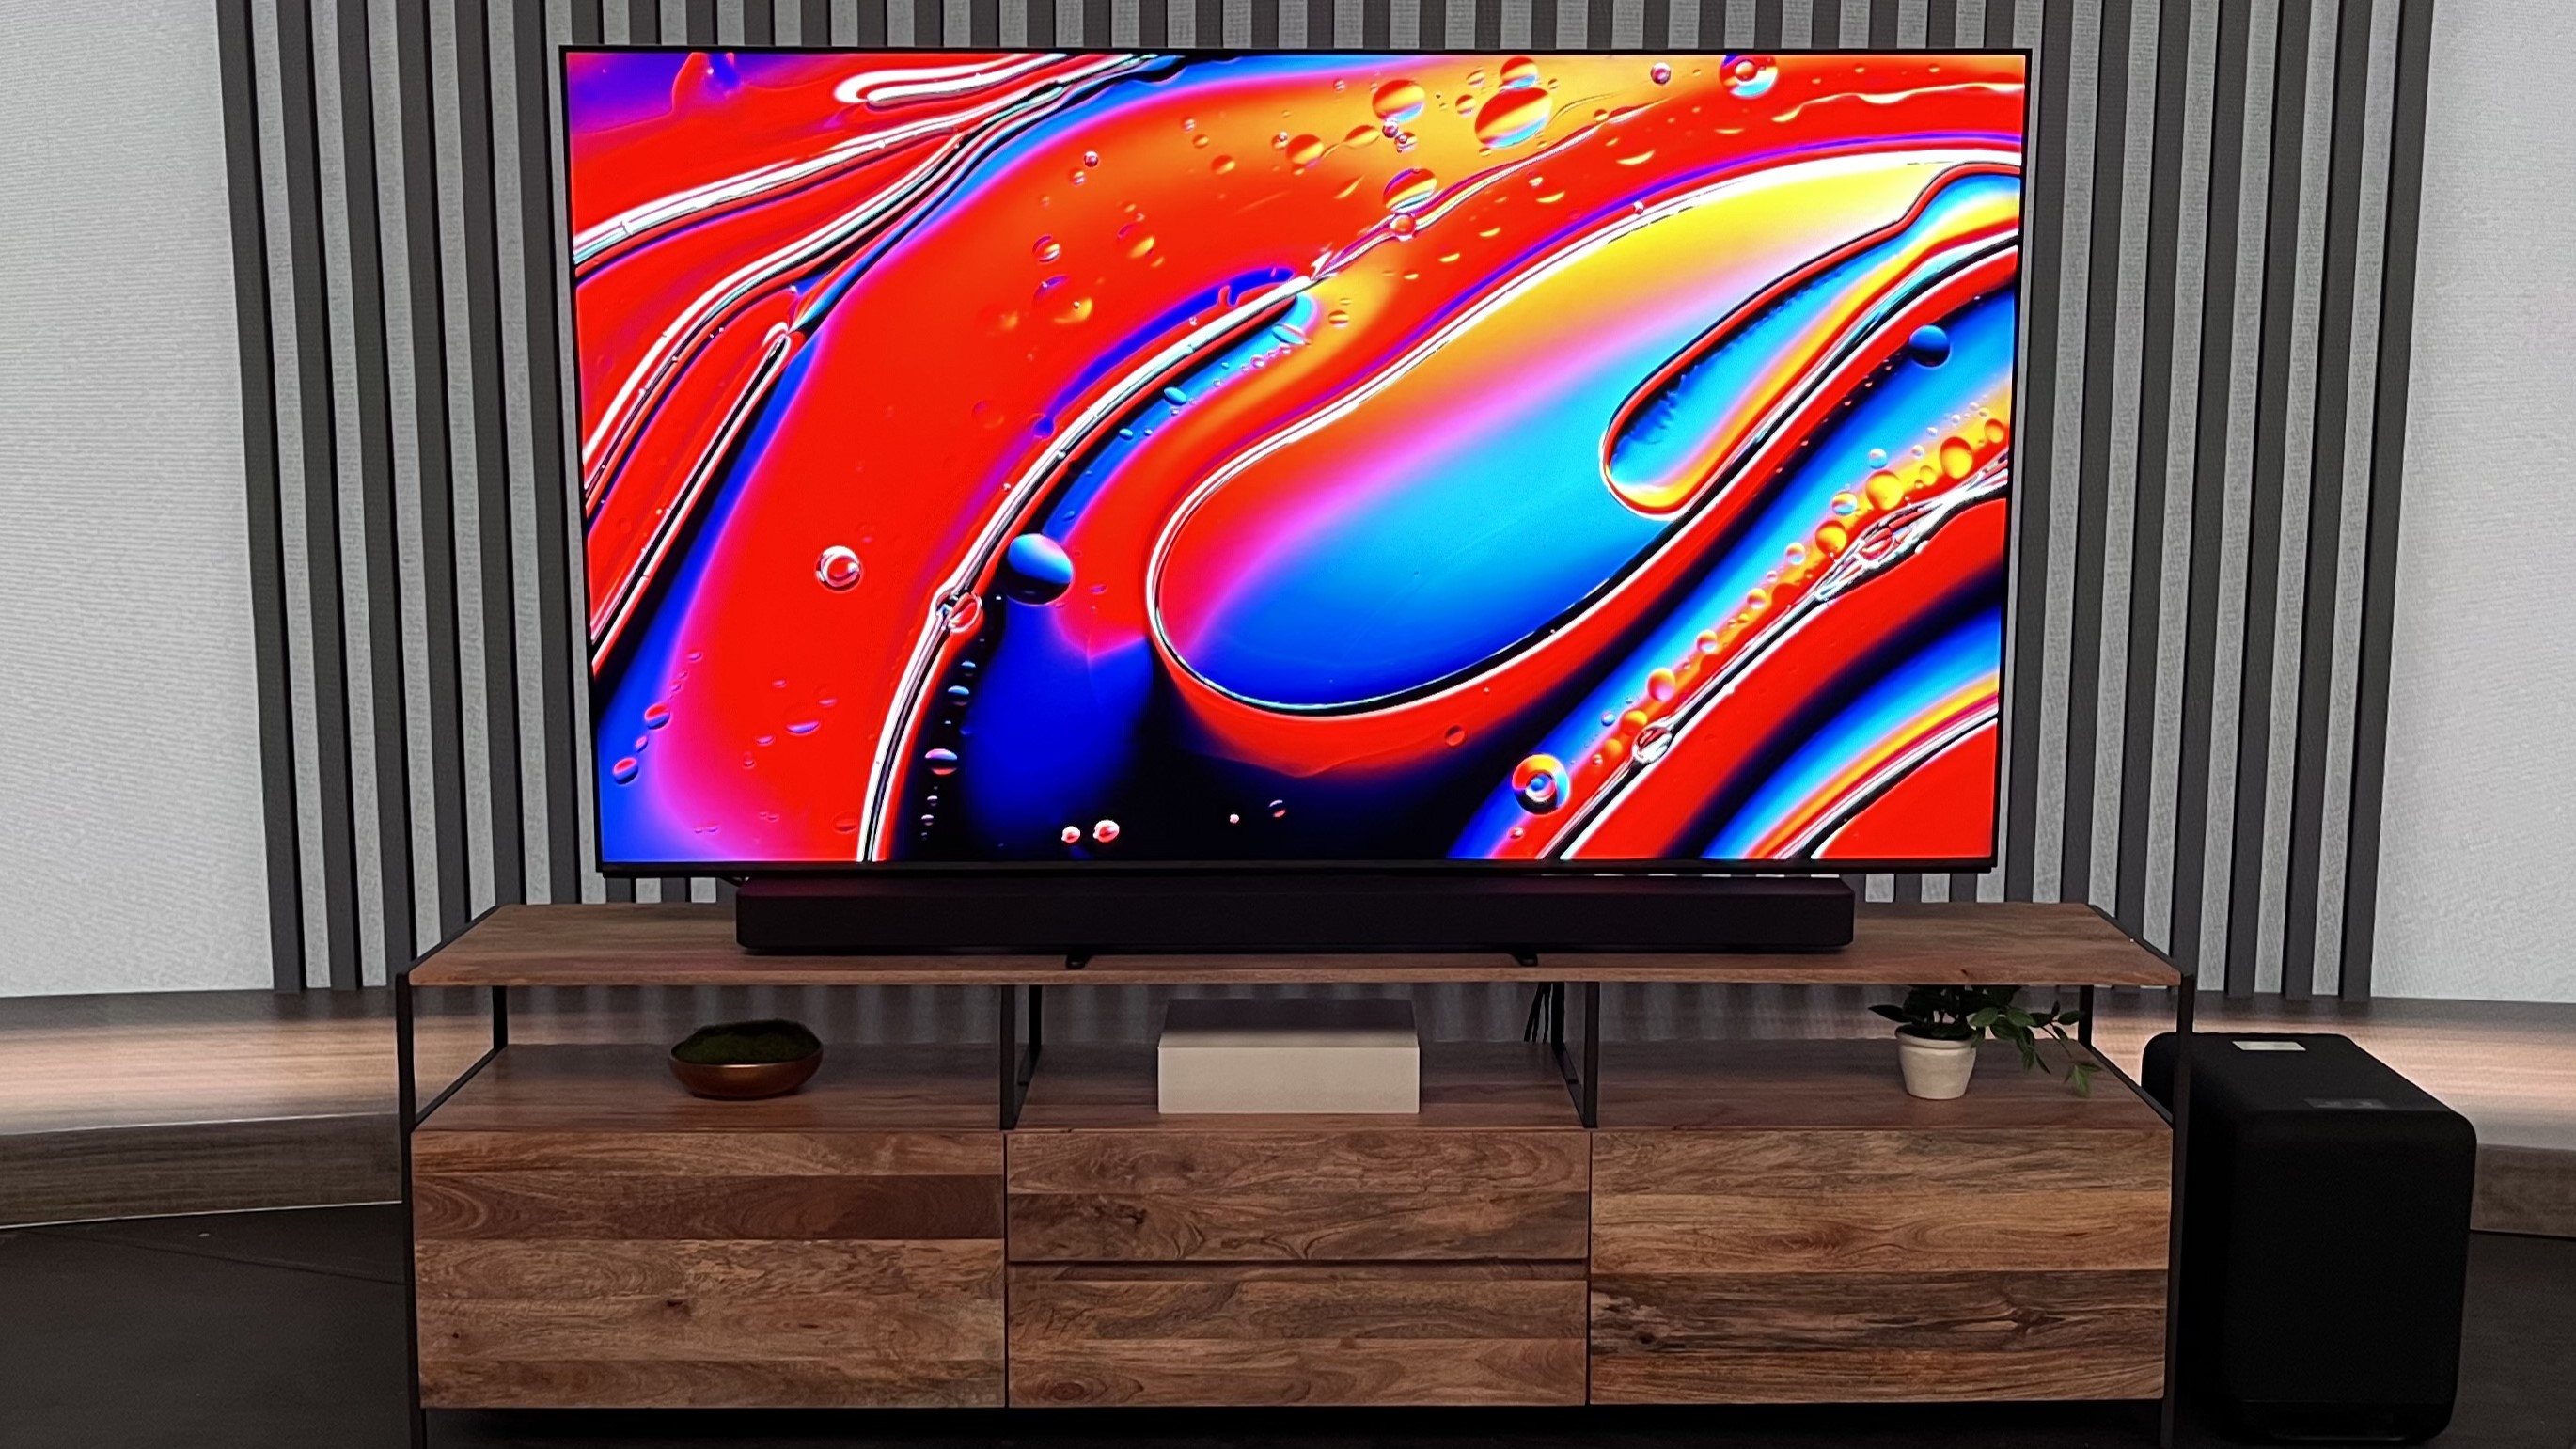 Sony Bravia 9 TV met een kleurrijk, abstract beeld op het scherm